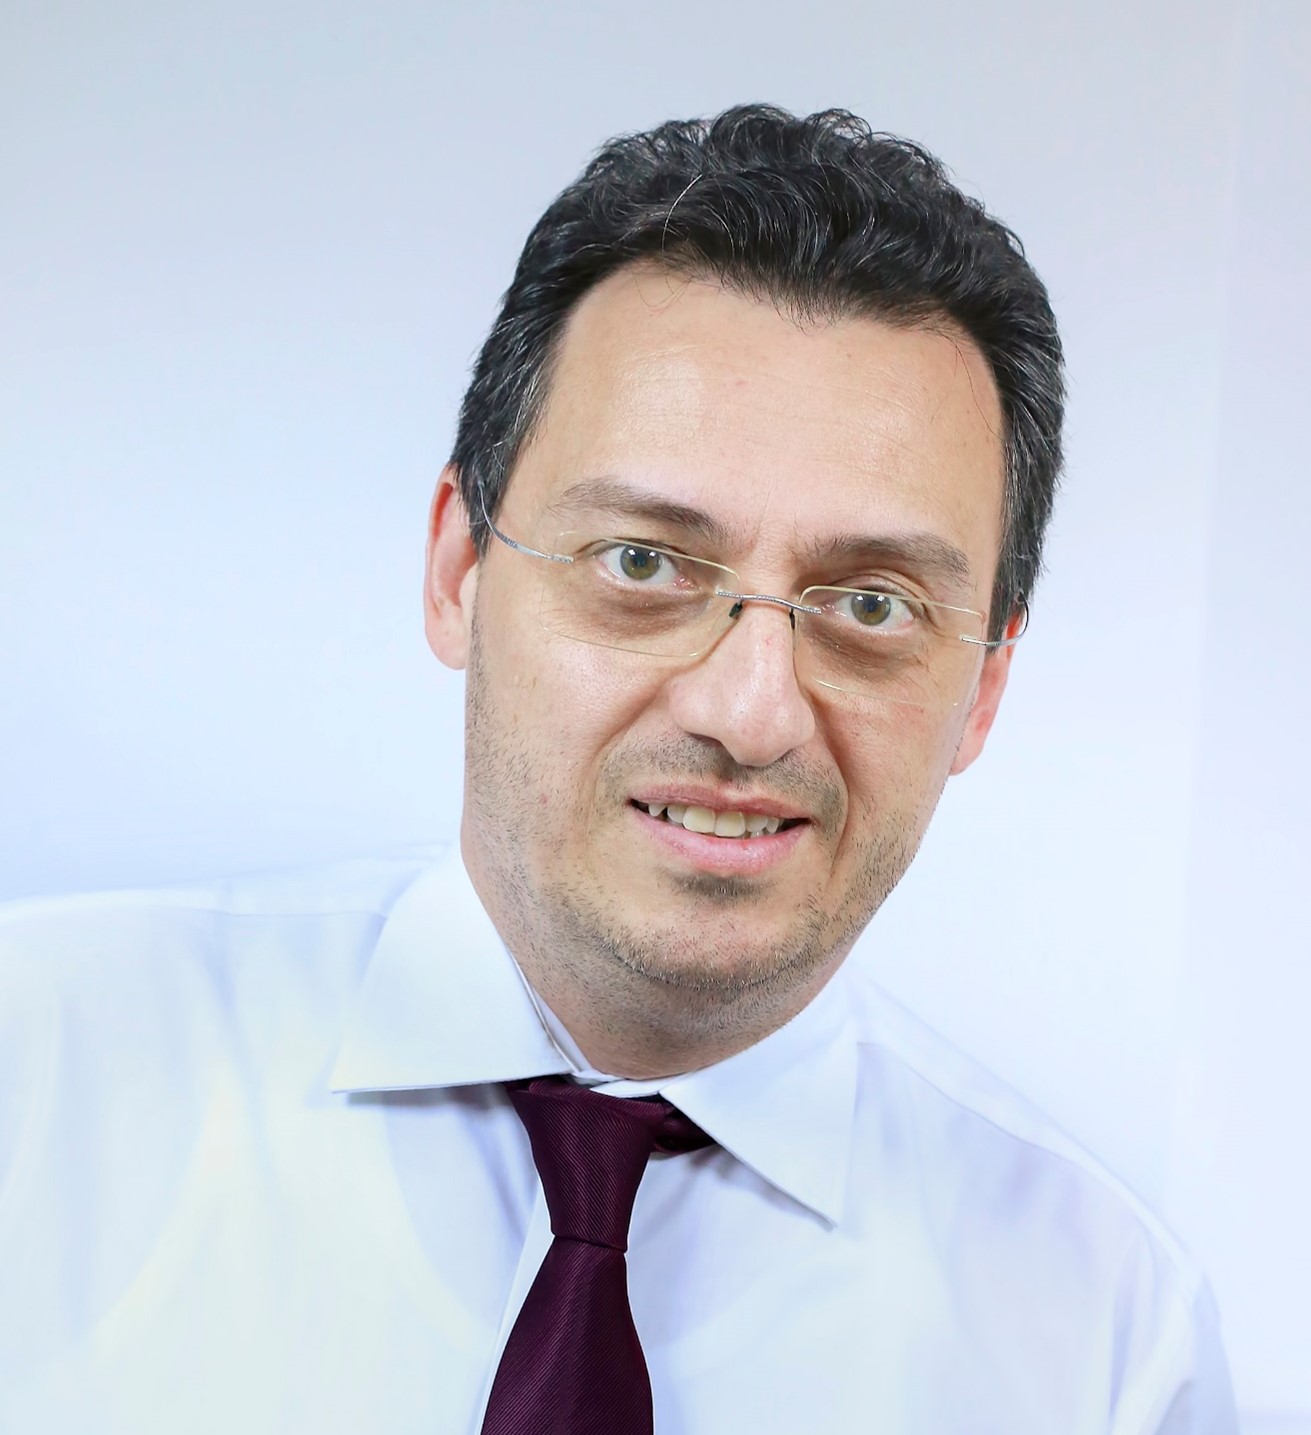 Meet Radu Ionescu, the new CEO of Cumulus image